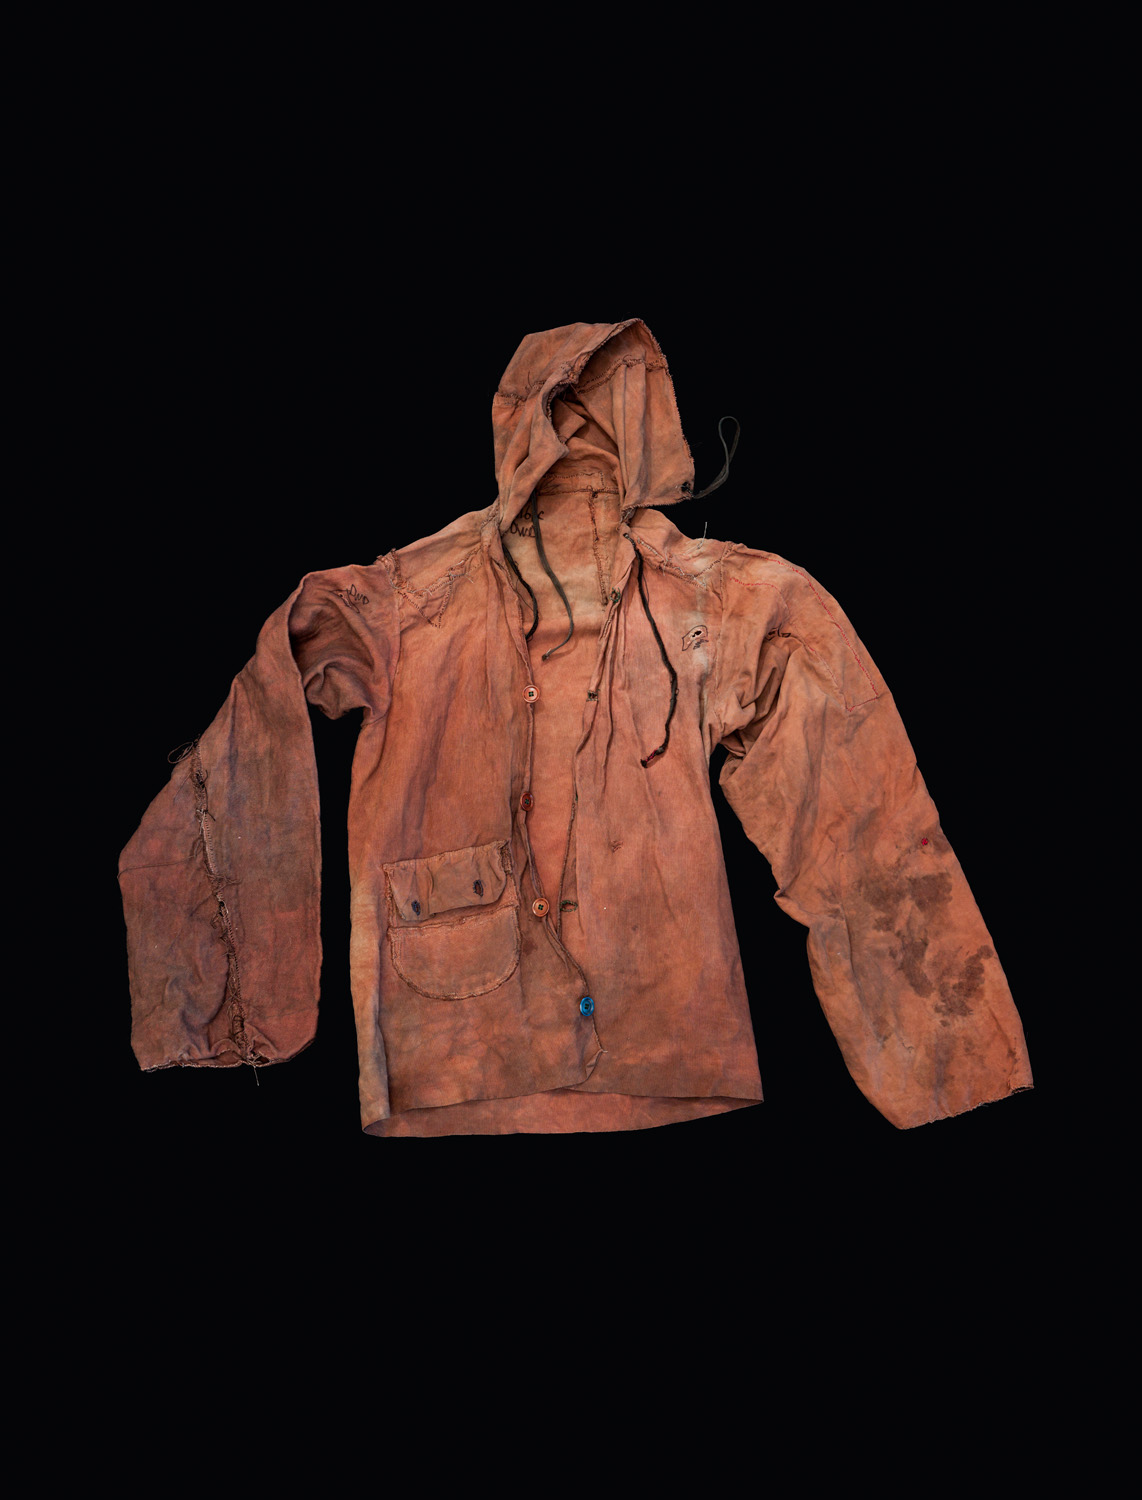  Unabomber Jacket, 2015 